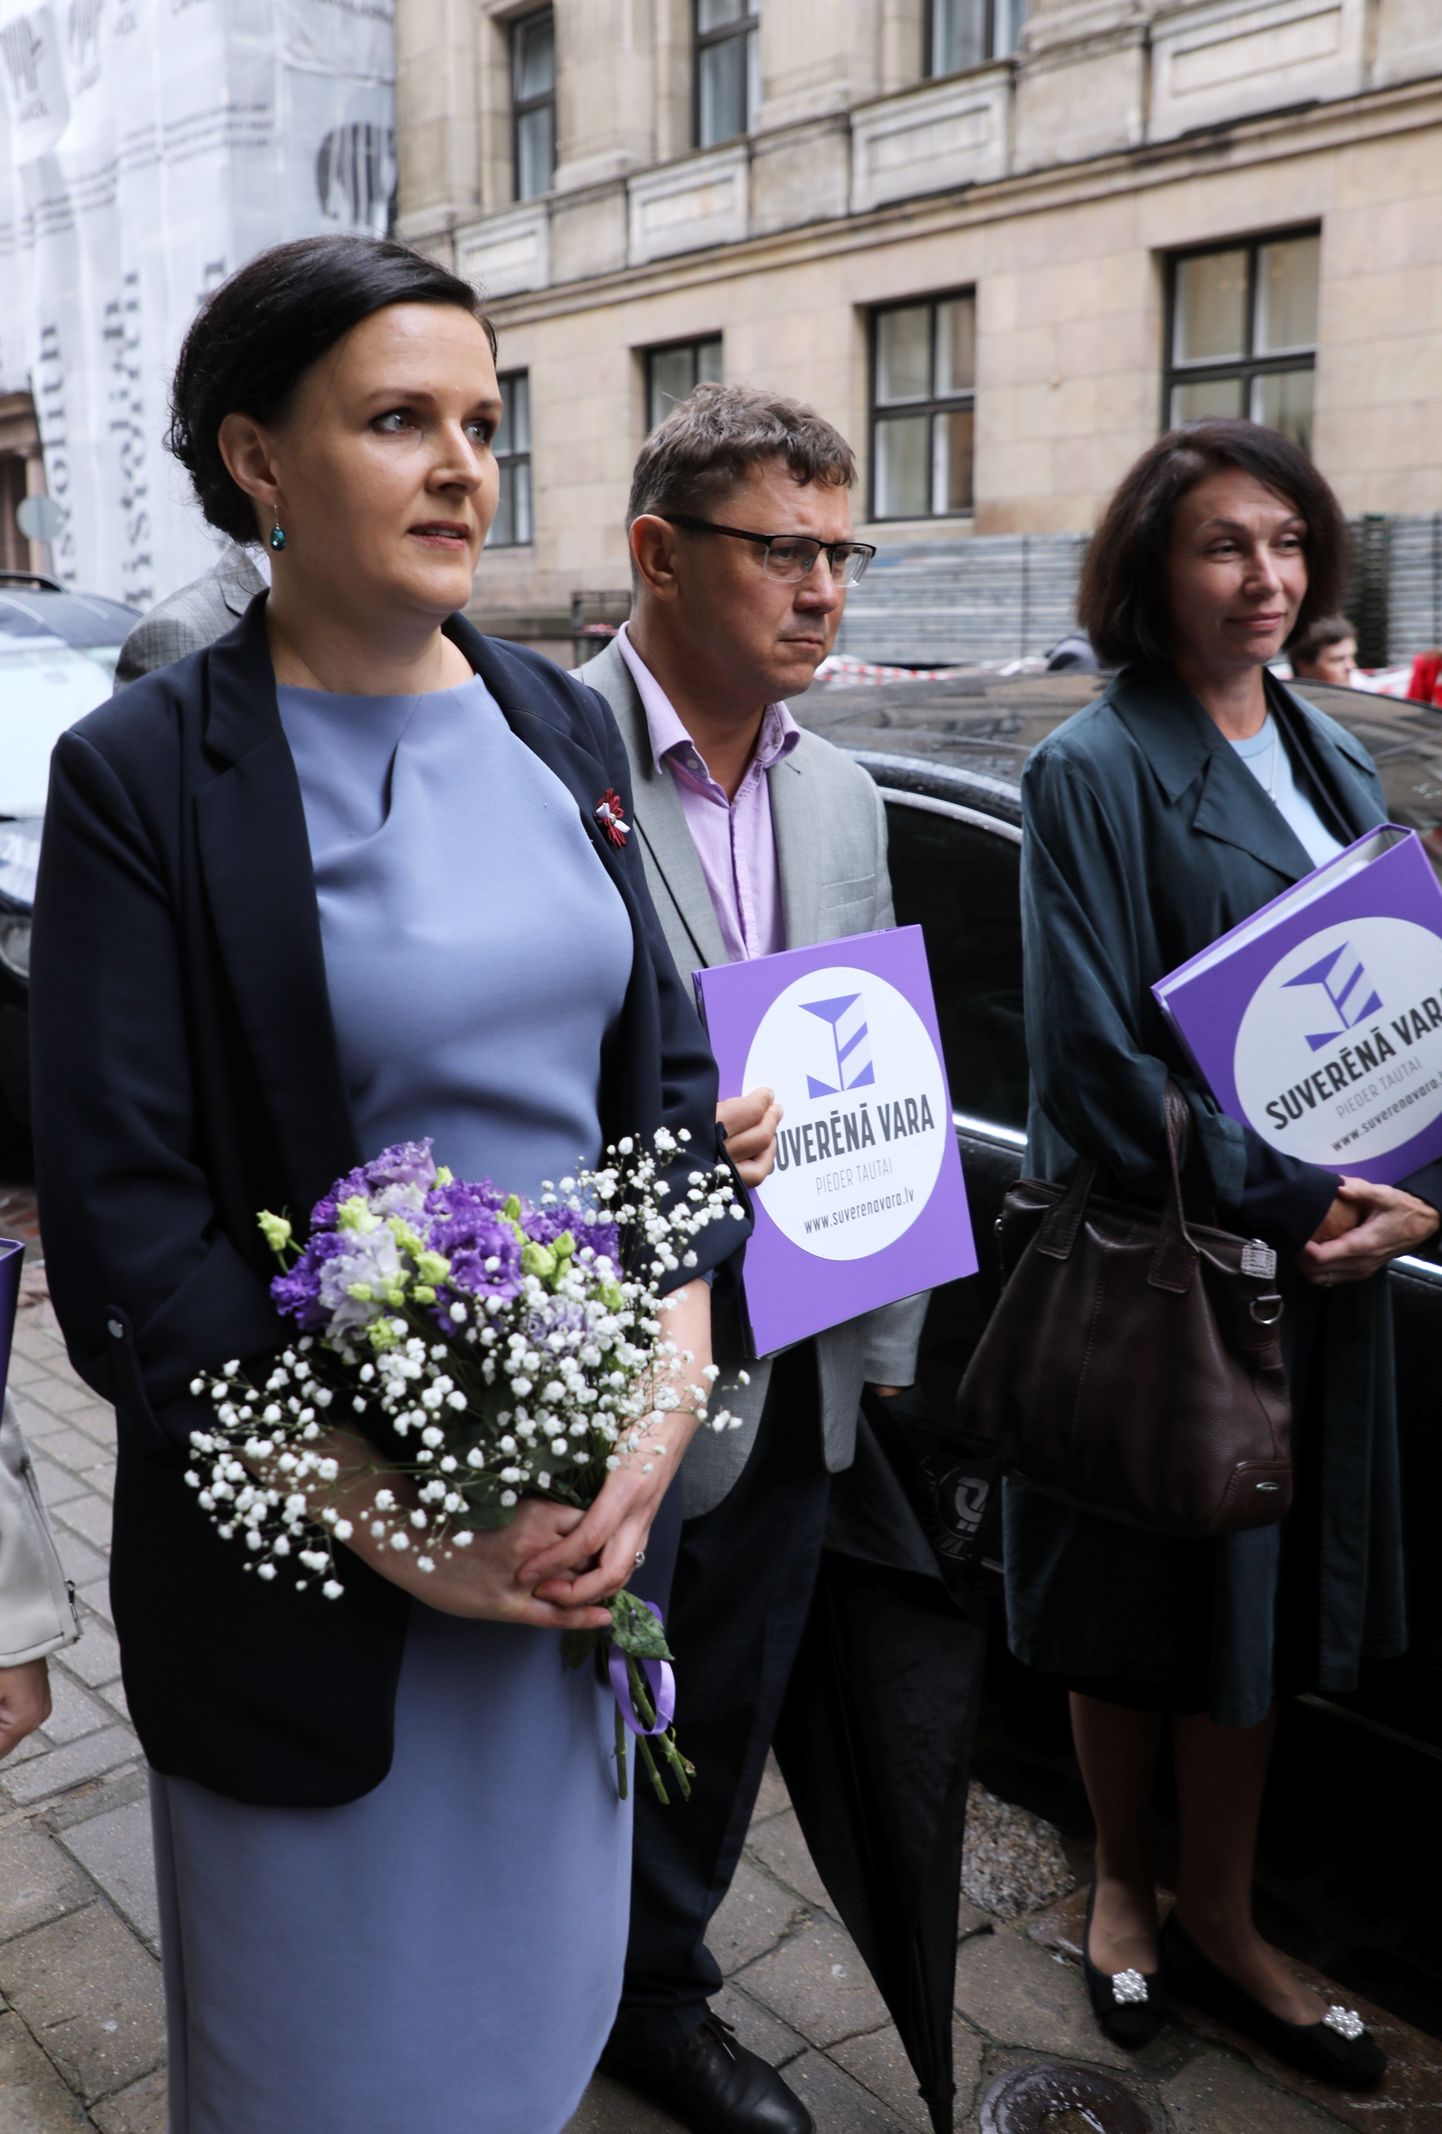 Partijas "Suverēnā vara" valdes locekles Jūlija Stepaņenko (no kreisās) un Ļubova Švecova dodas iesniegt partijas deputātu kandidātu sarakstu un priekšvēlēšanu programmu 14. Saeimas vēlēšanām Centrālajā vēlēšanu komisijā.